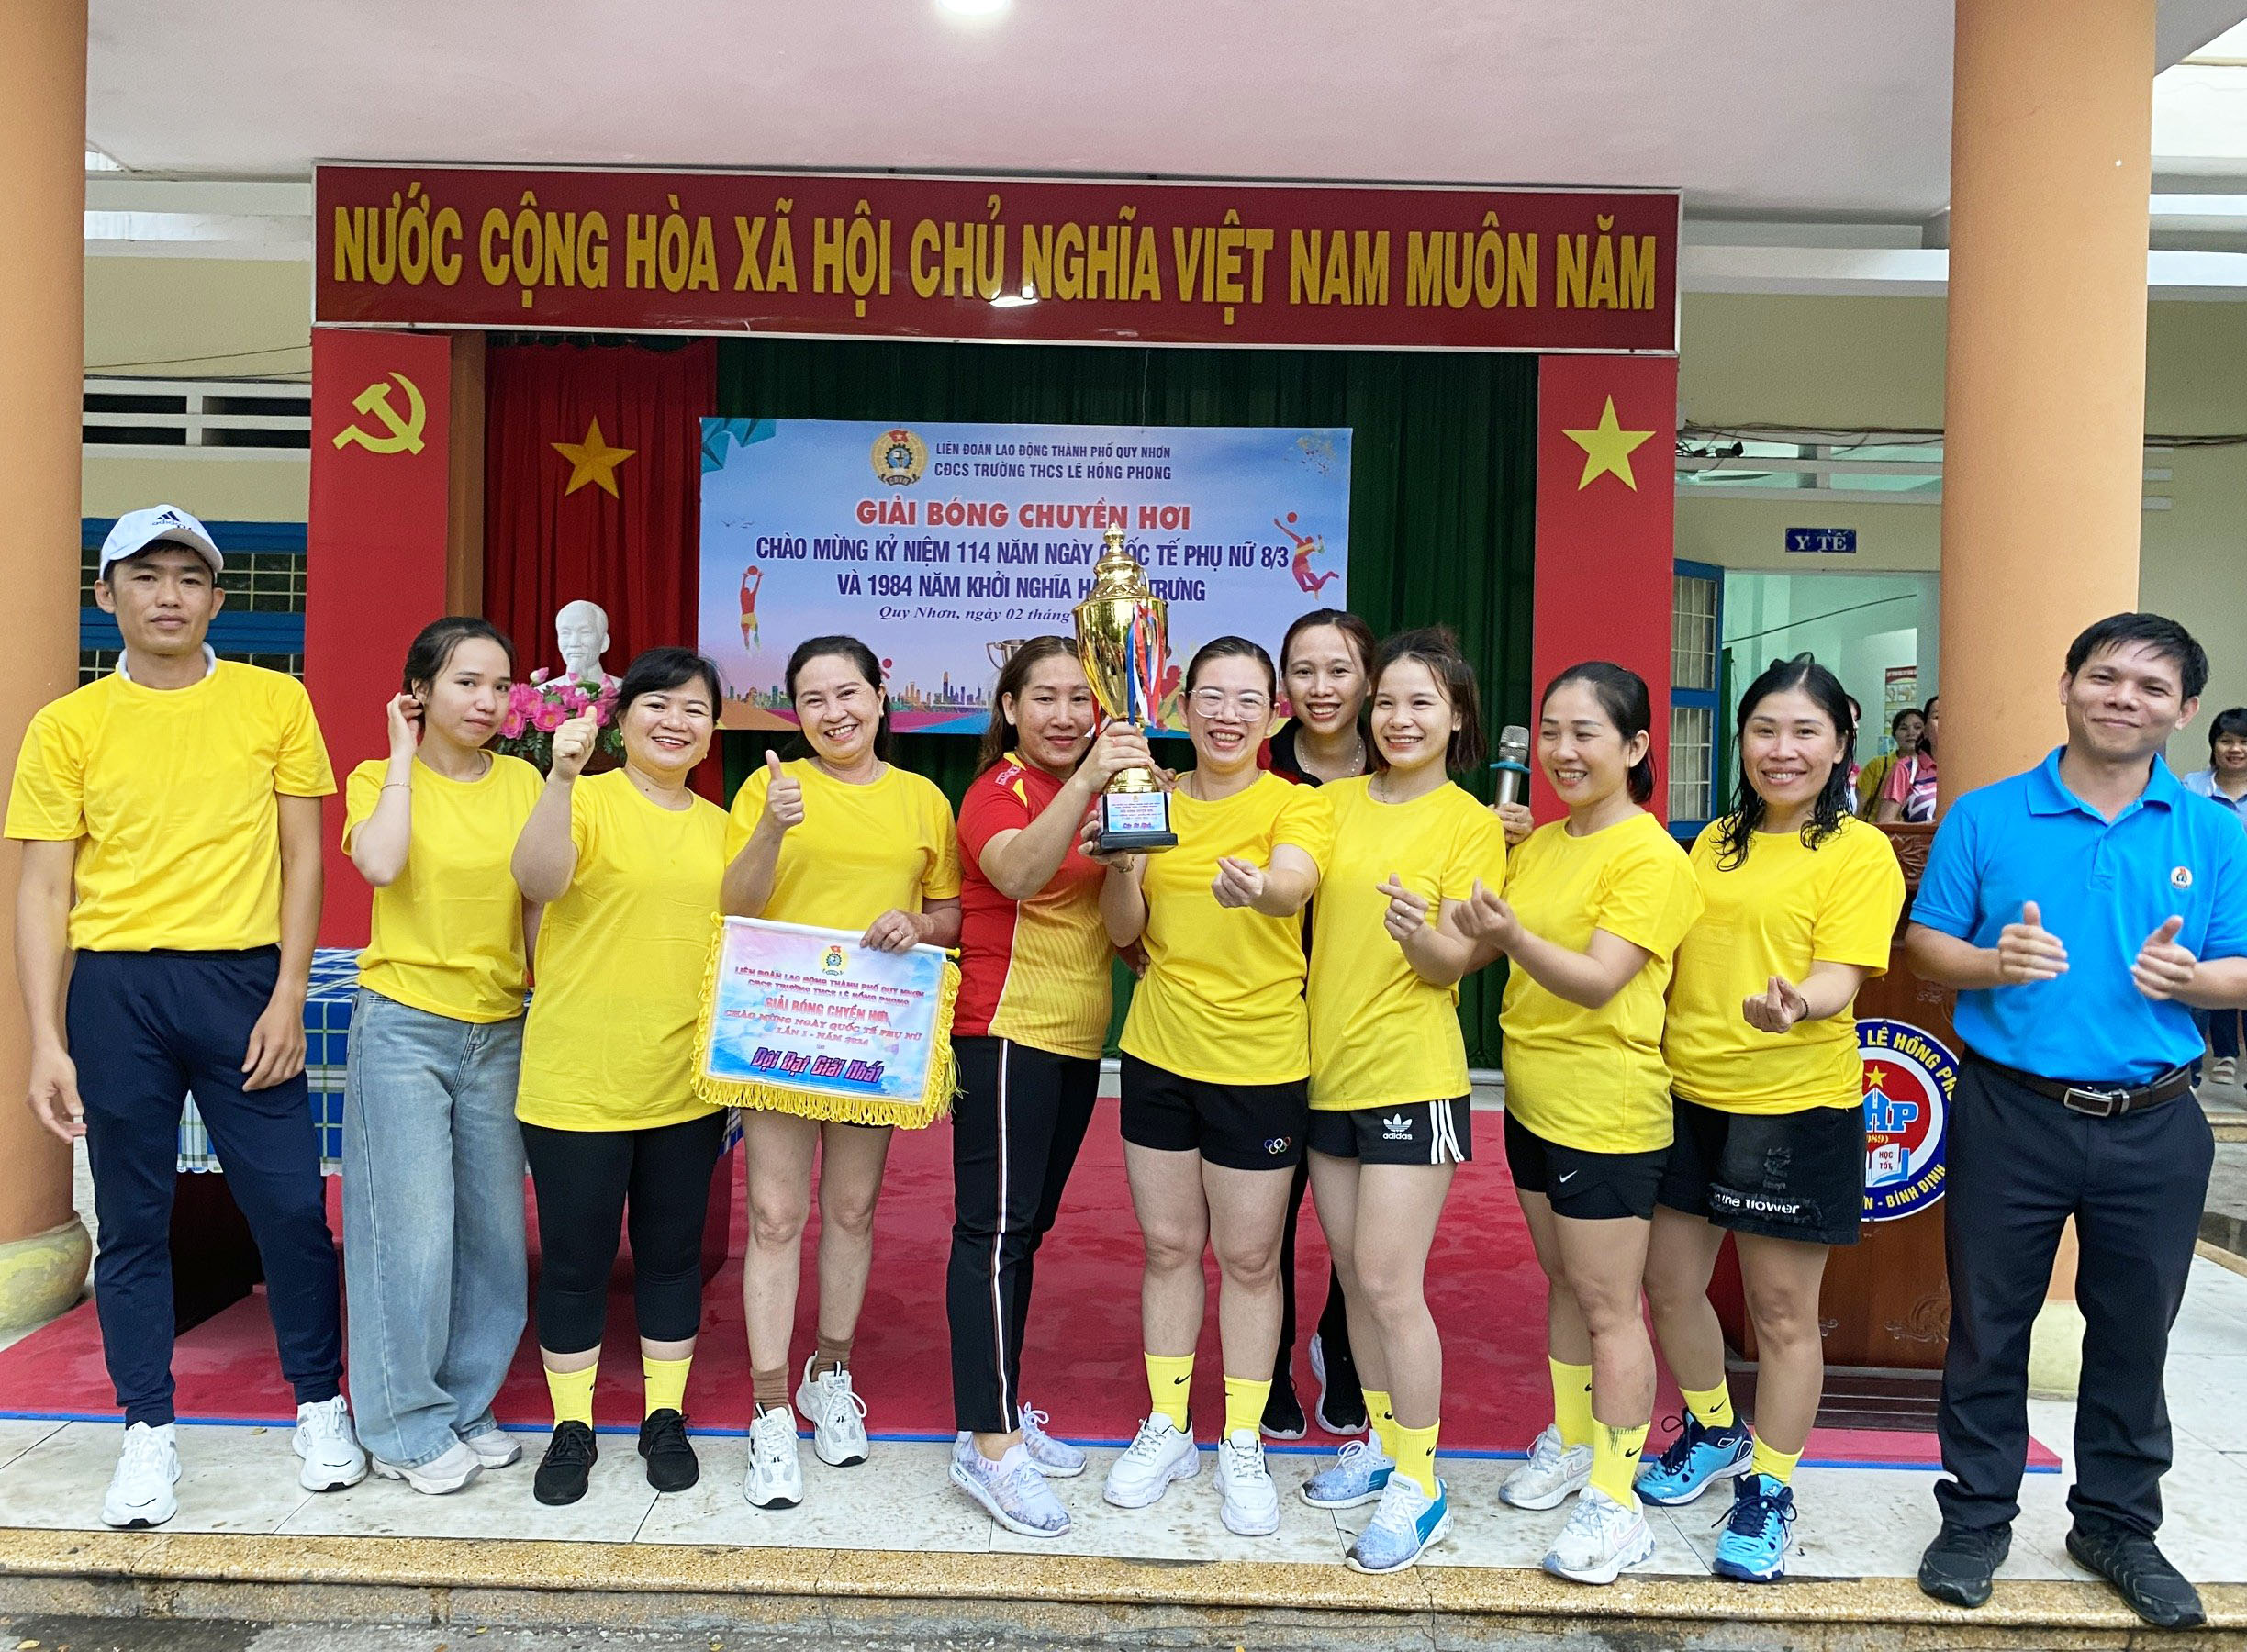 CĐCS trường THCS Lê Hồng Phong tổ chức Giải bóng chuyền hơi